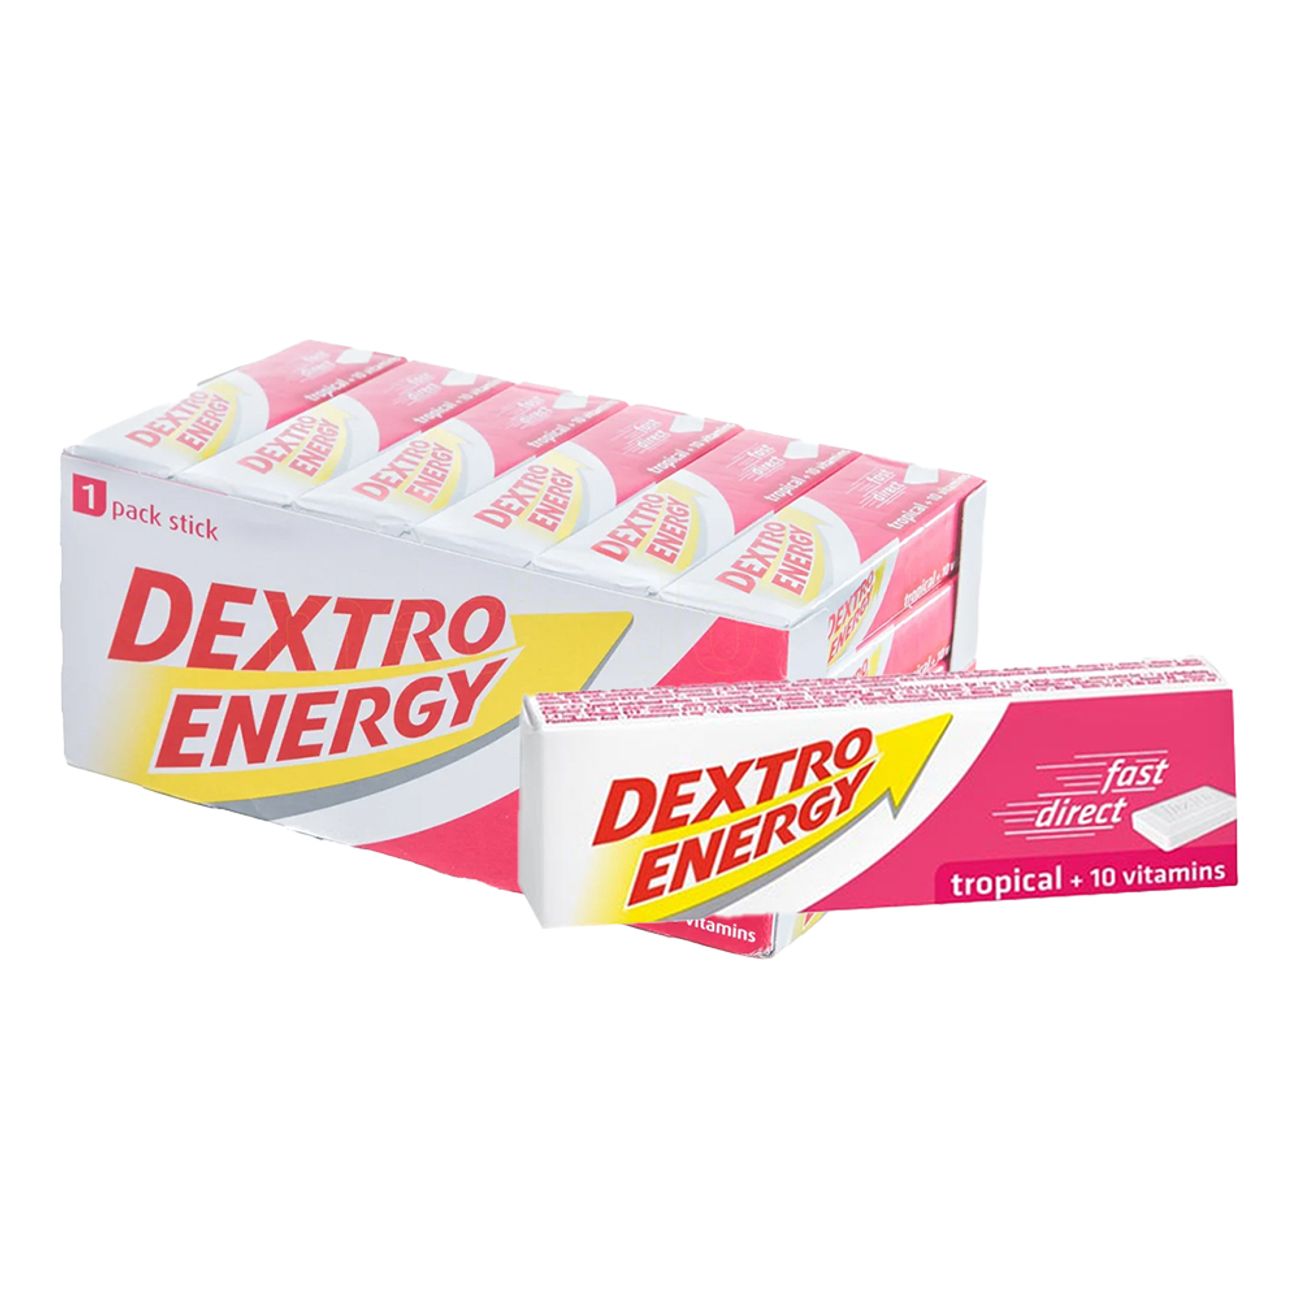 dextro-energy-tropical-43341-3